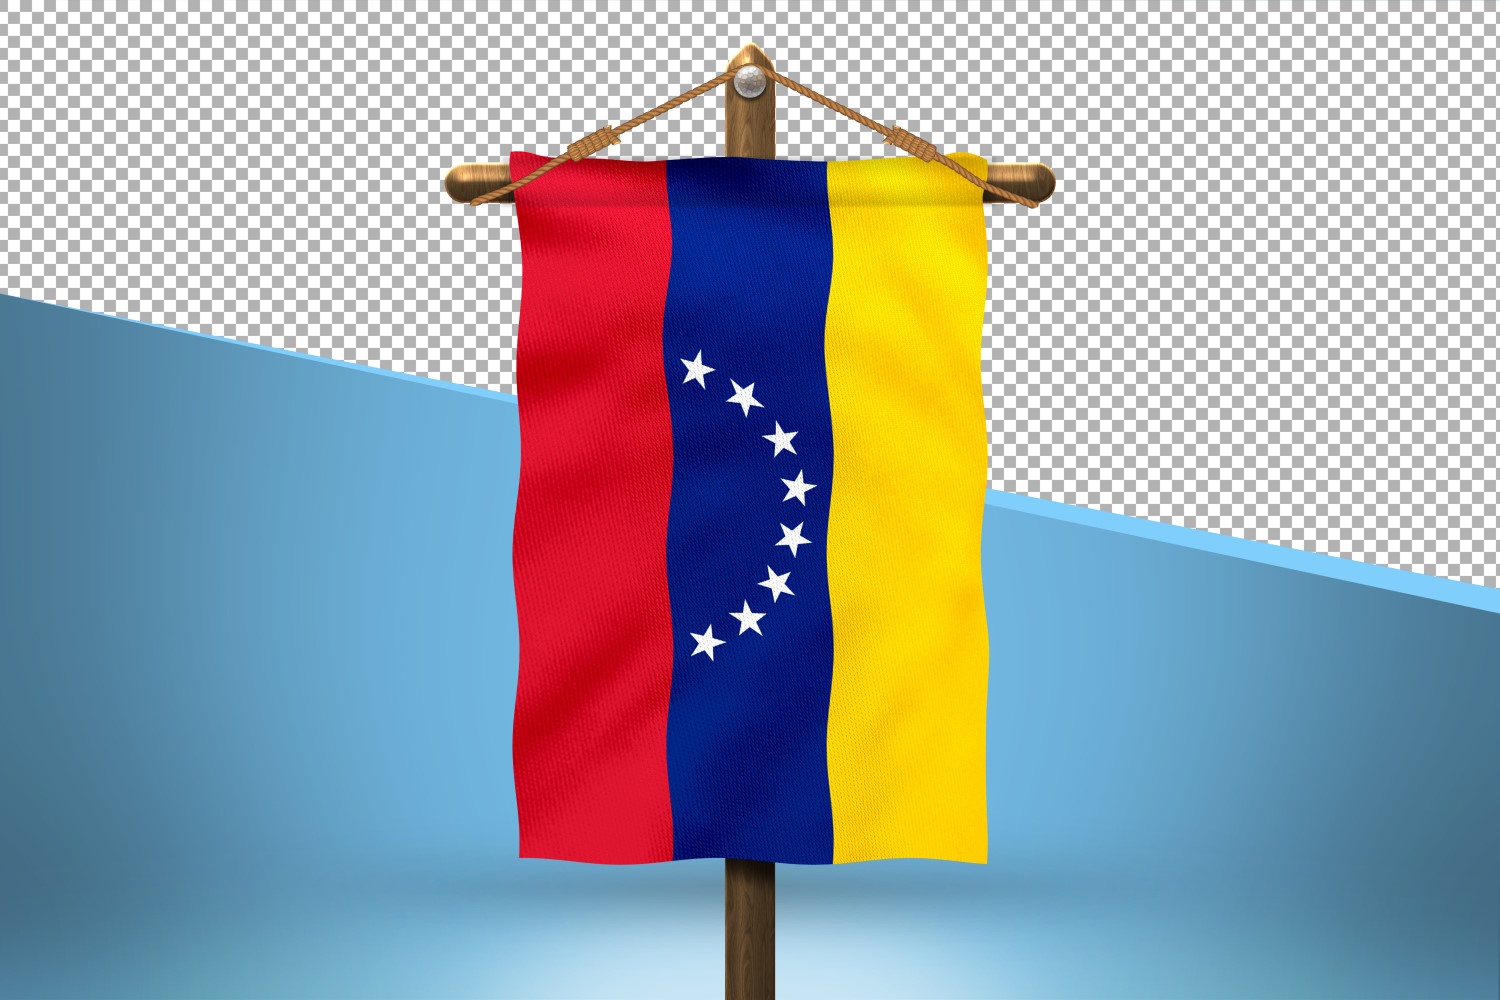 Venezuela Hang Flag Design Background